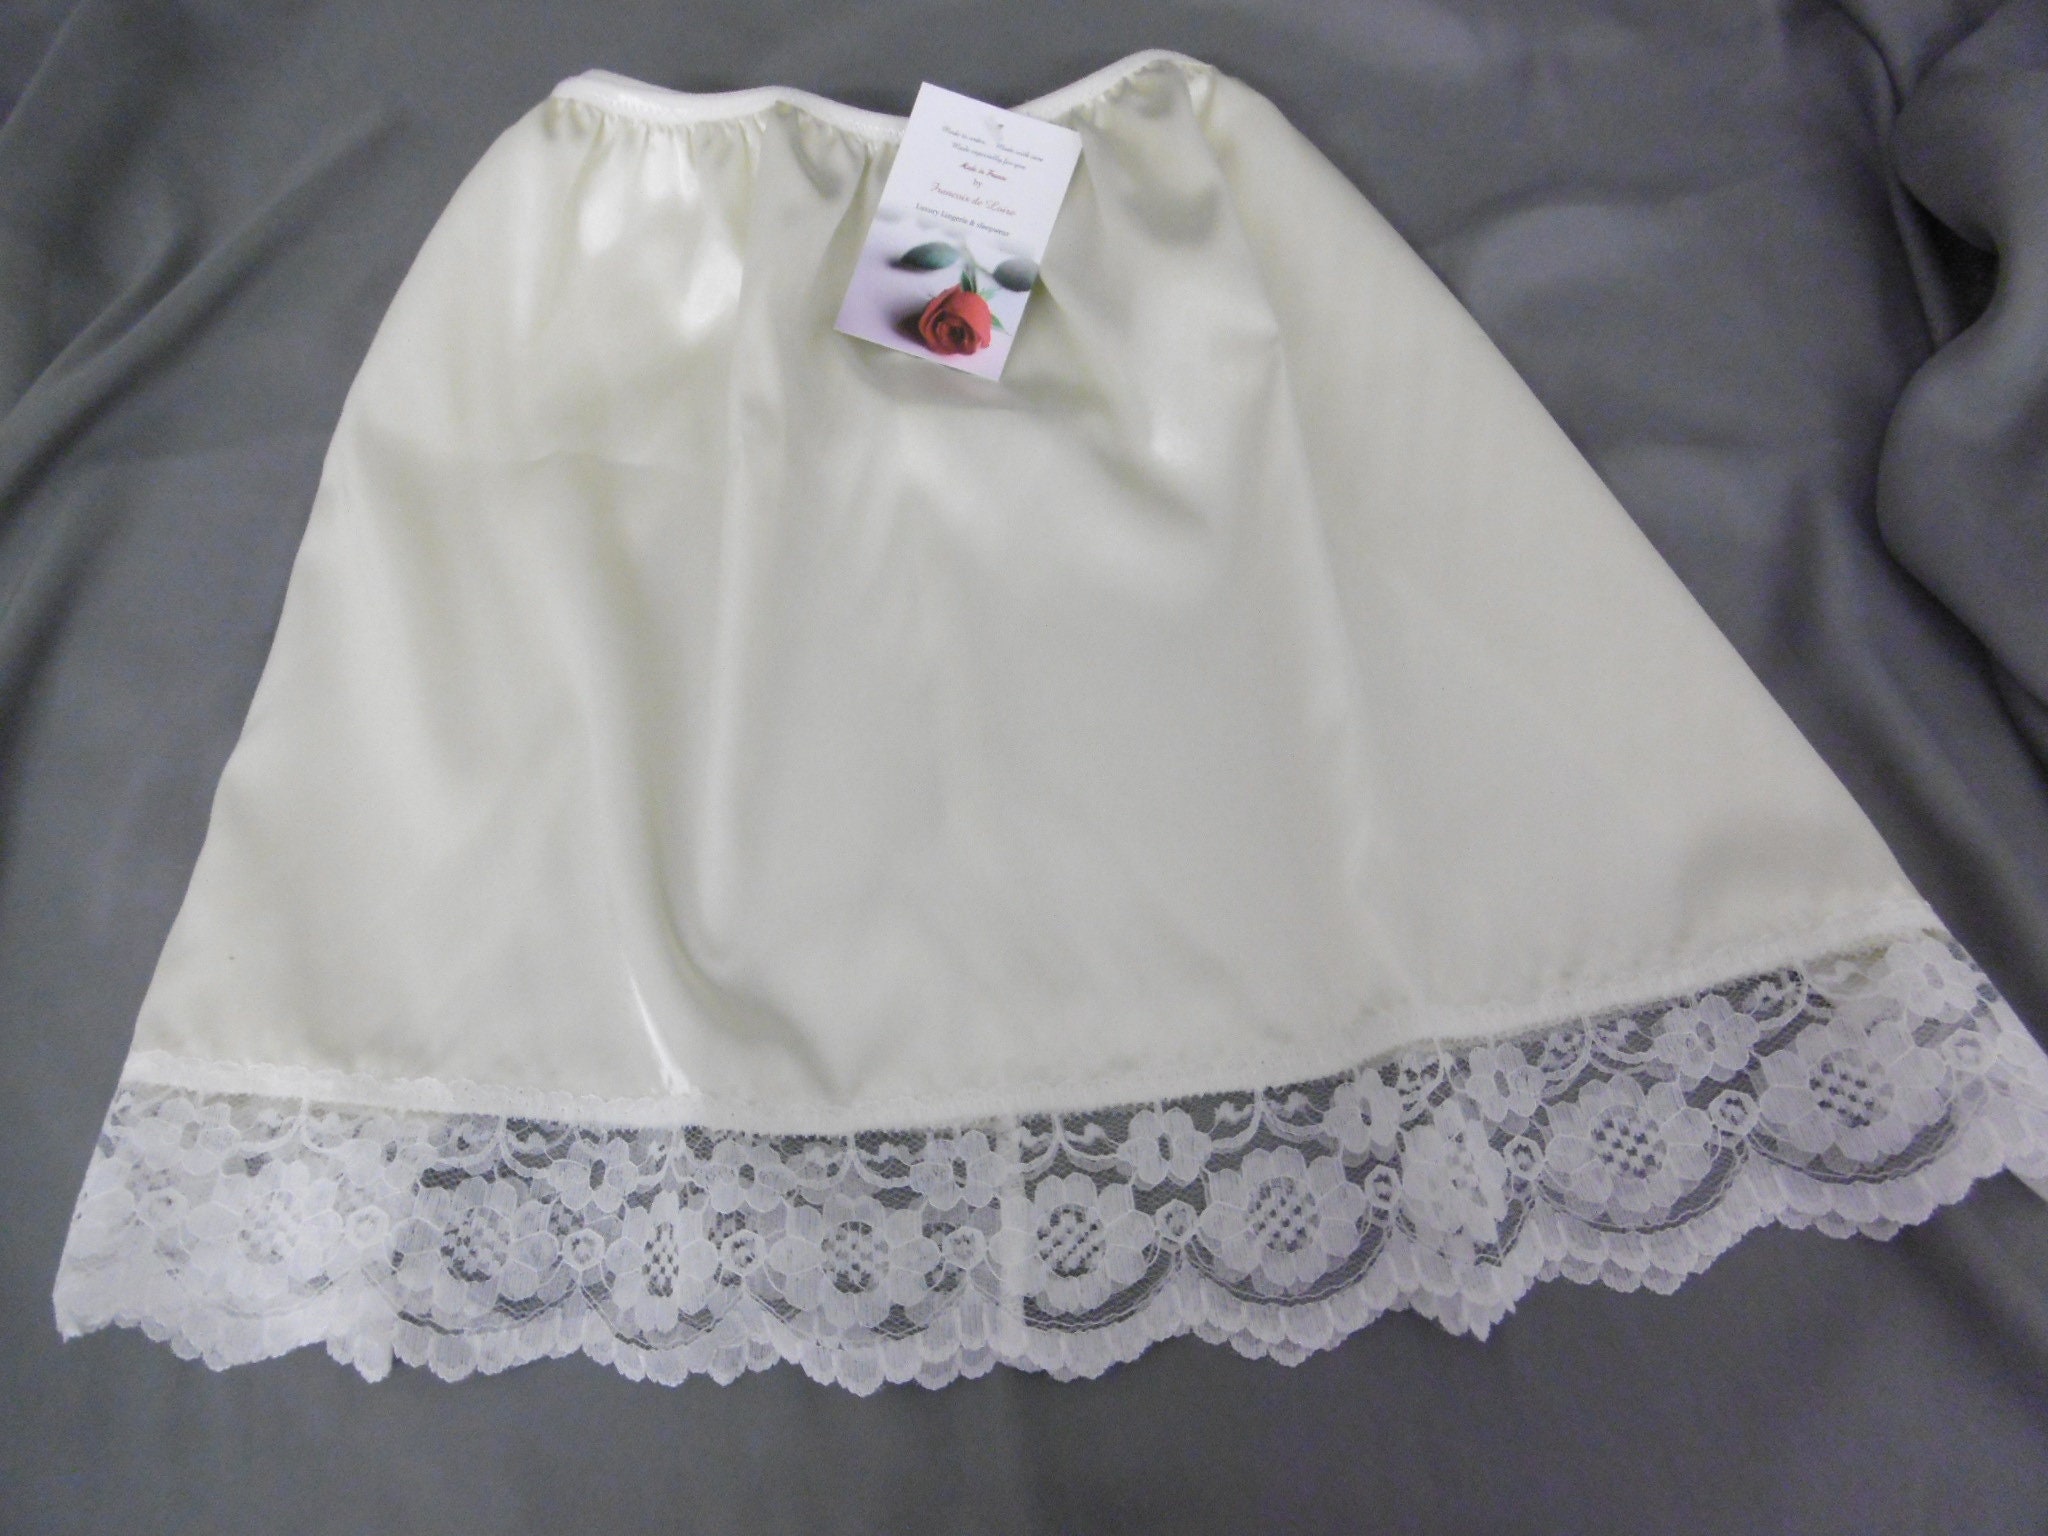 Full Slip, White Cotton Slip Full Length, Maxi White Underdress